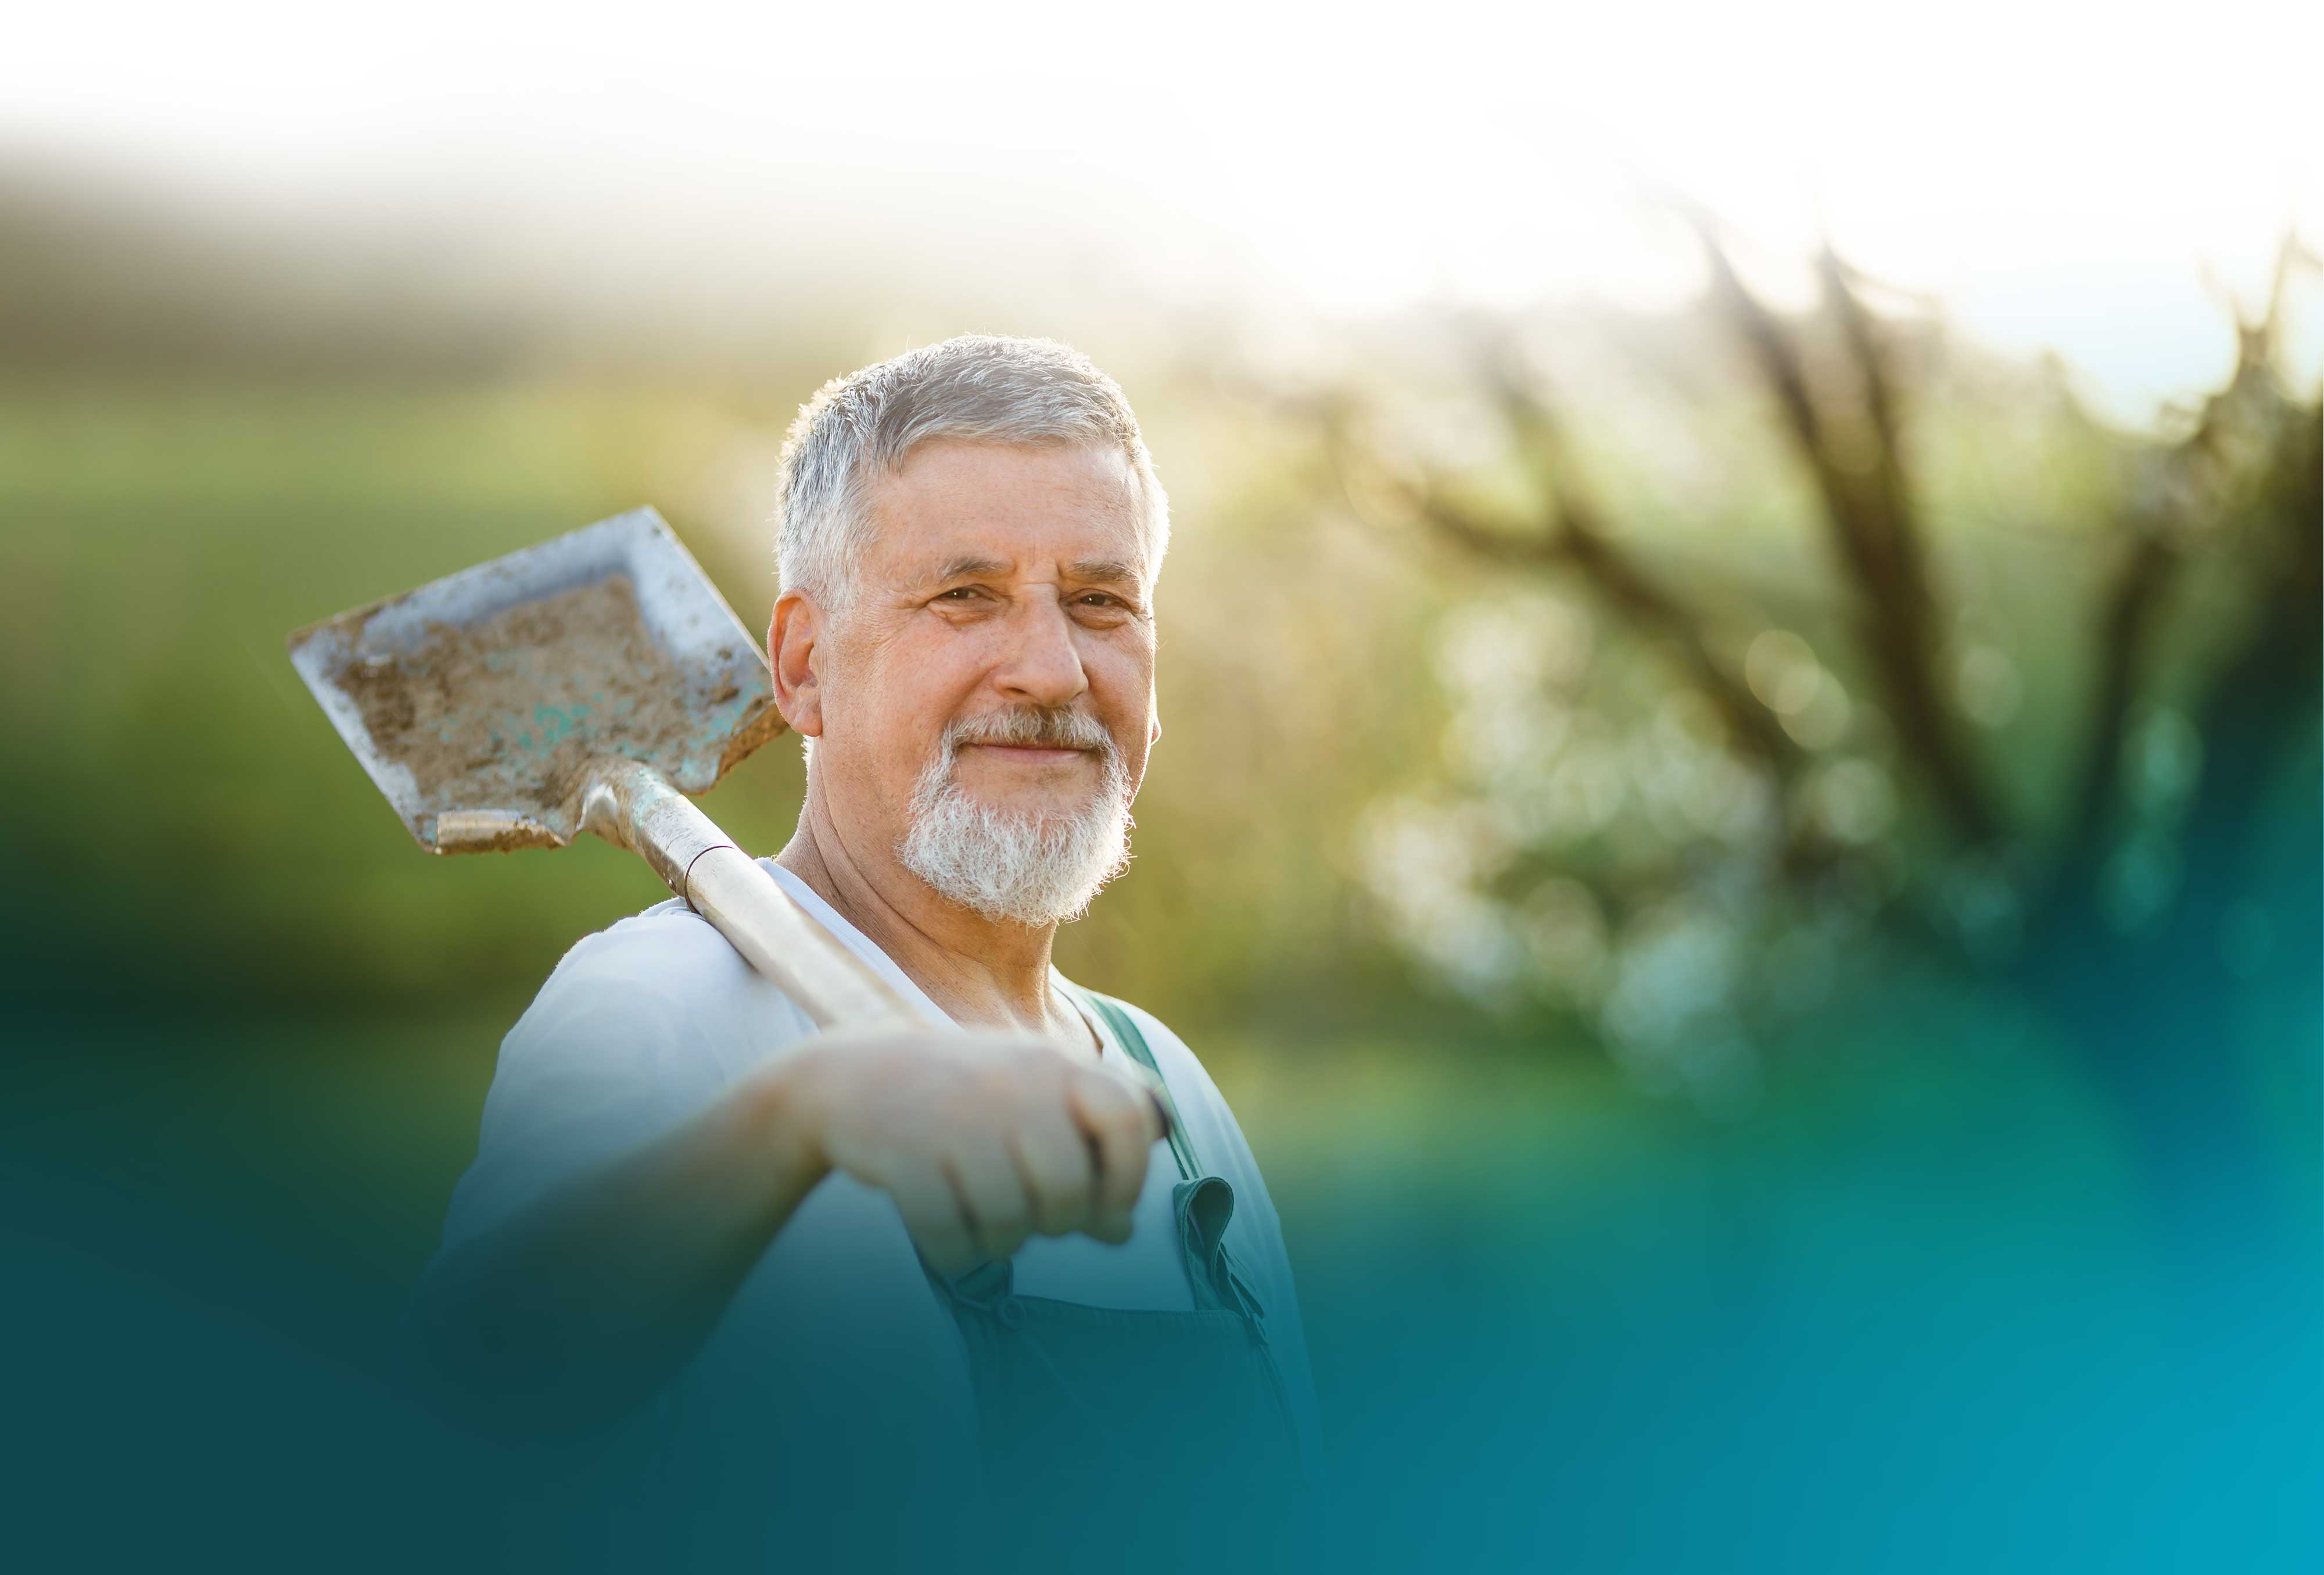 Elderly man with a shovel on his shoulder